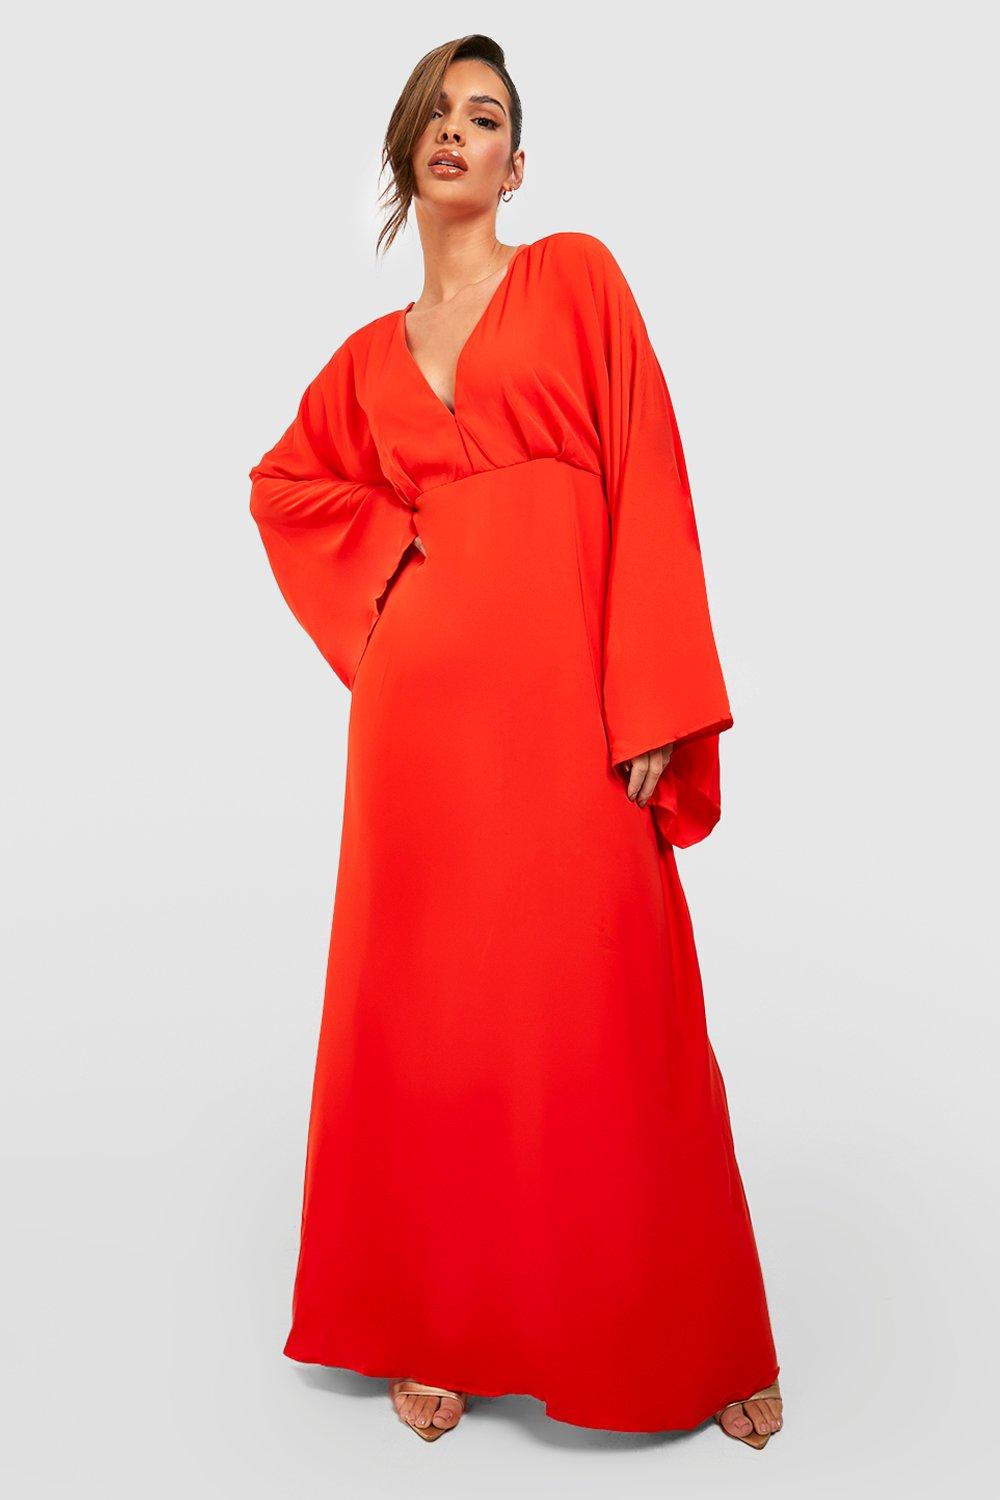 Vintage Evening Dresses Womens Plunge Wide Sleeve Maxi Dress - Orange - 14 $42.00 AT vintagedancer.com